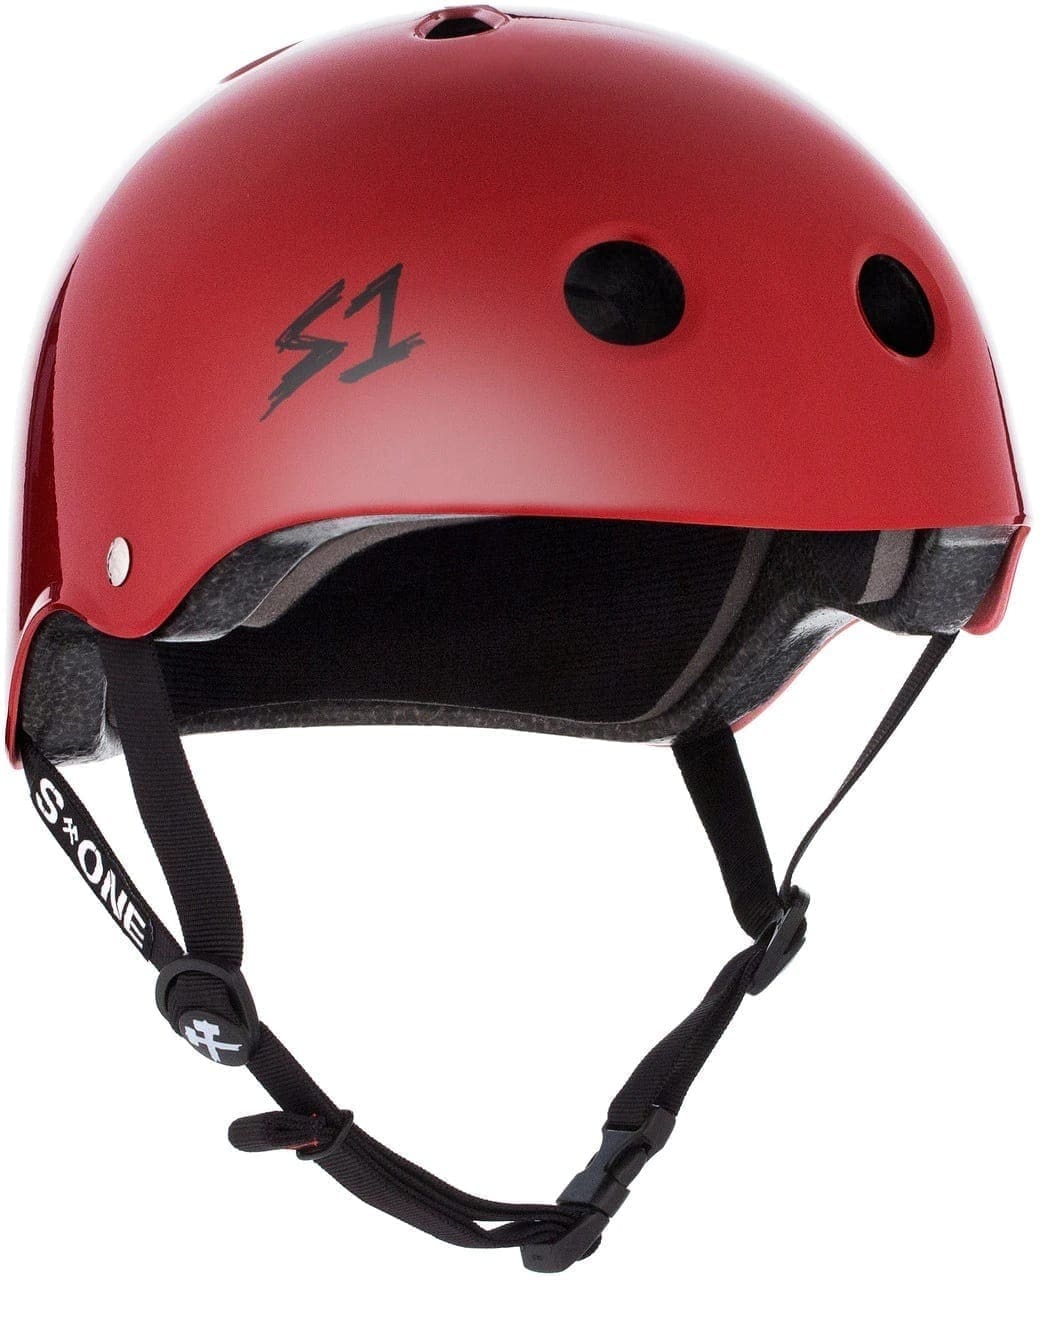 S-One | Lifer Helmet Scarlet Red Gloss